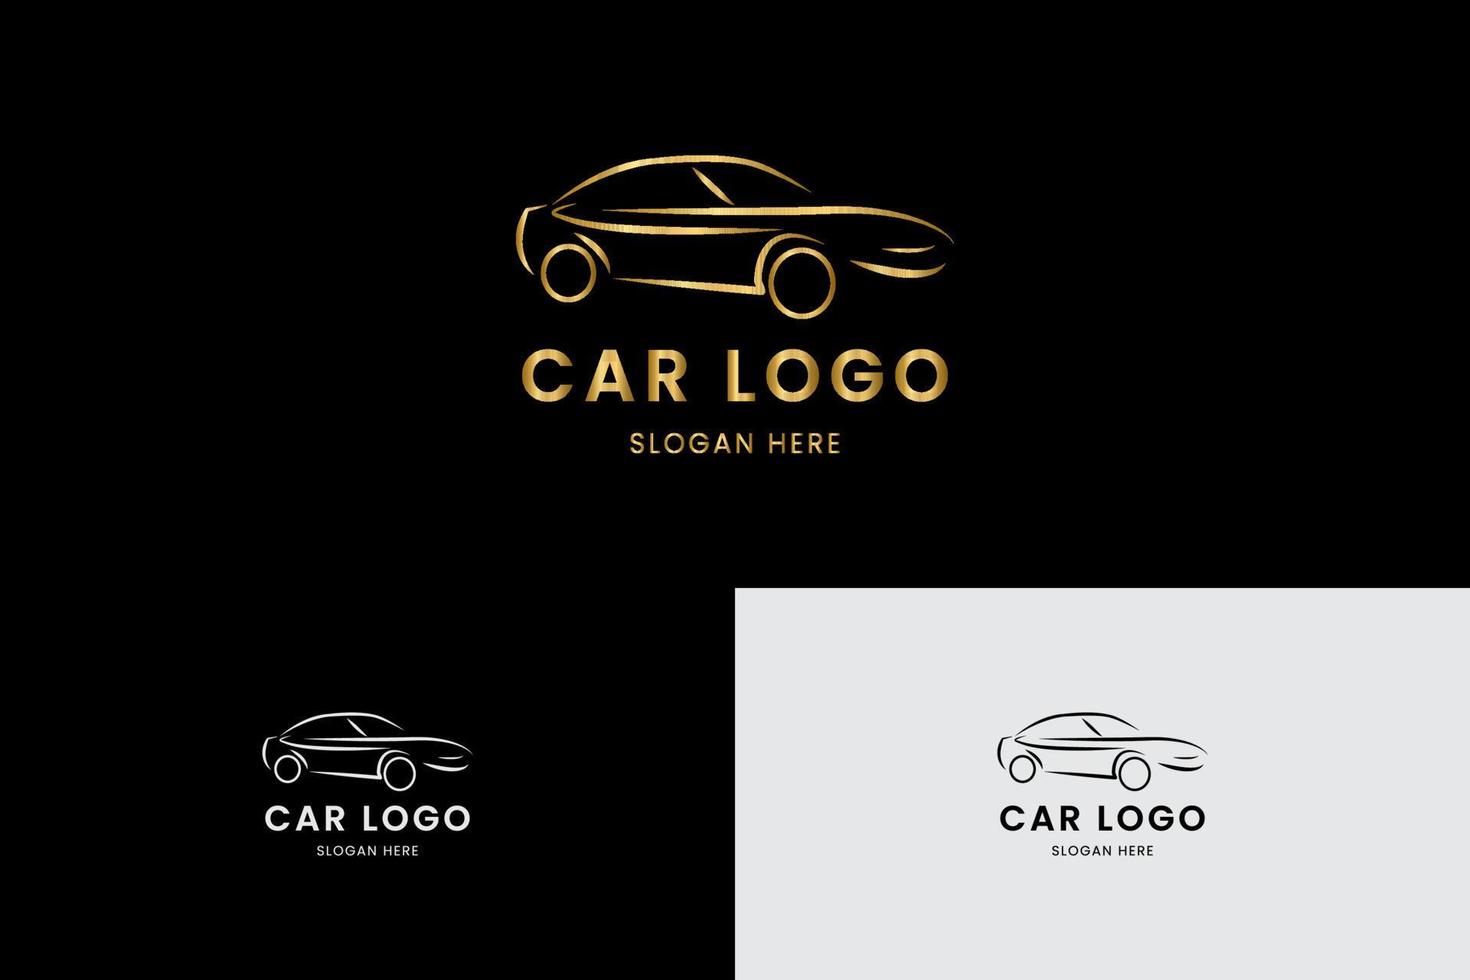 moderno logo auto oro in stile elegante con sfondo nero. vettore